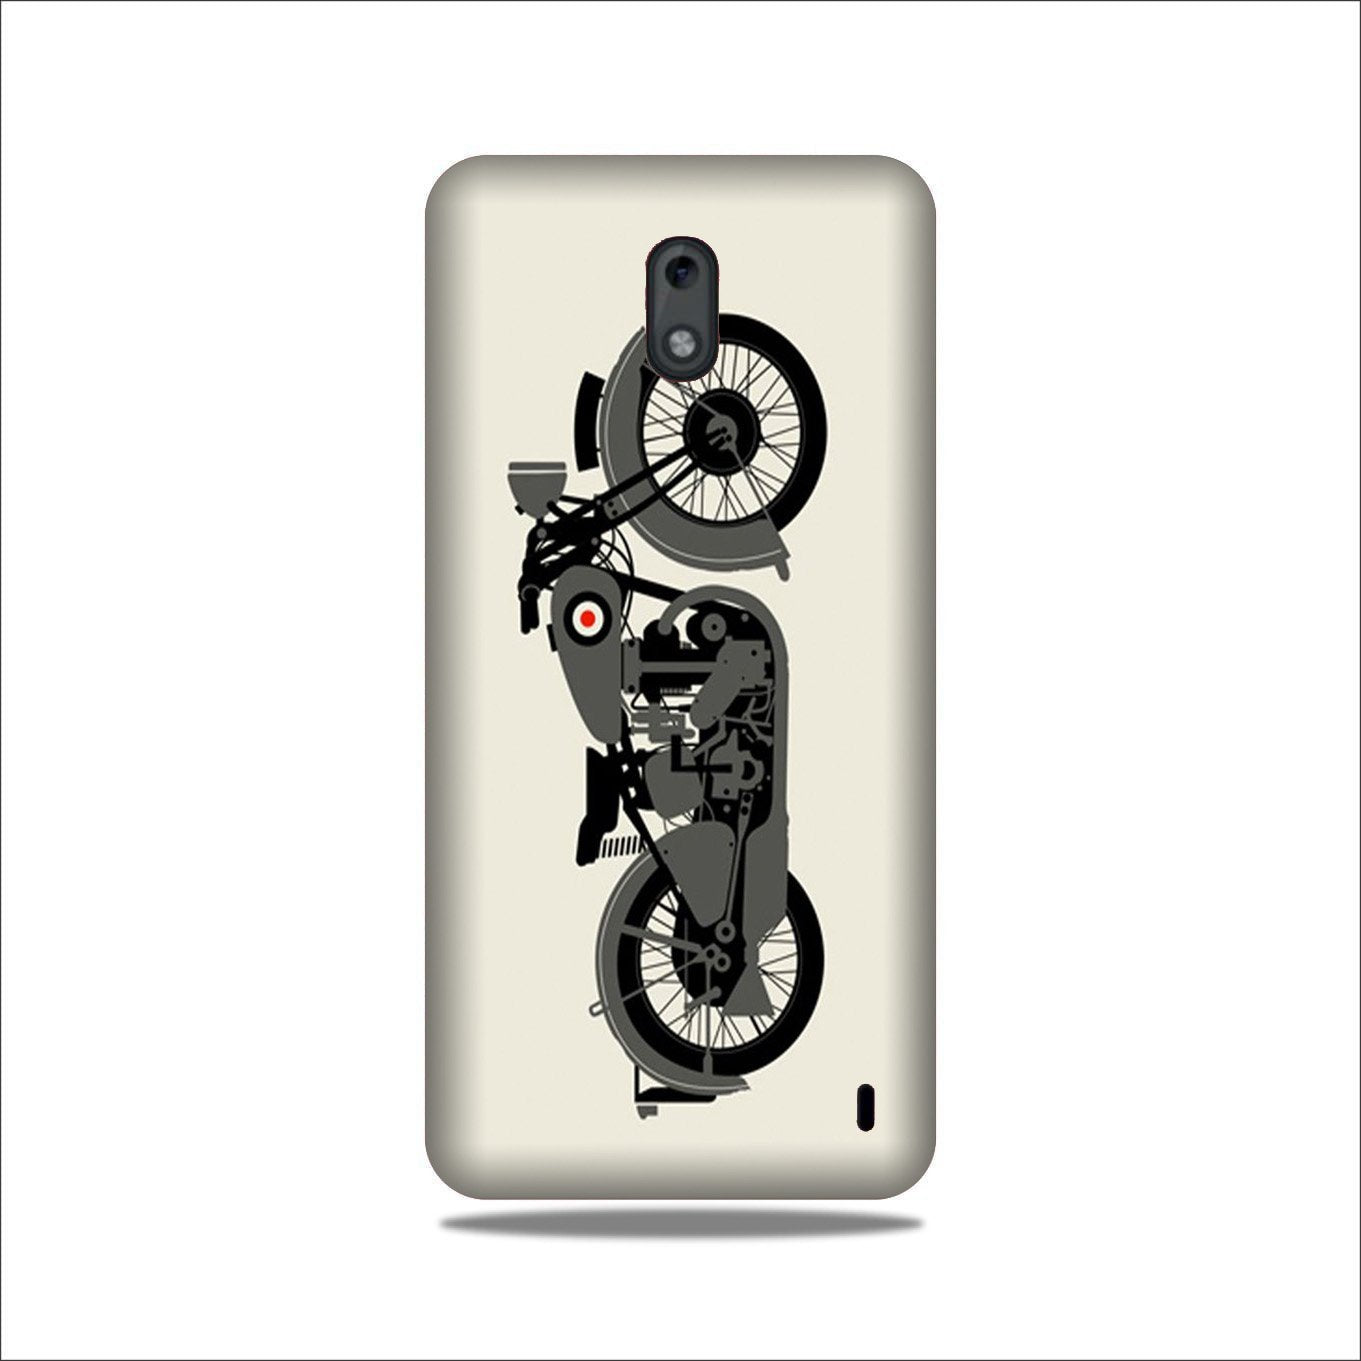 MotorCycle Case for Nokia 2.2 (Design No. 259)